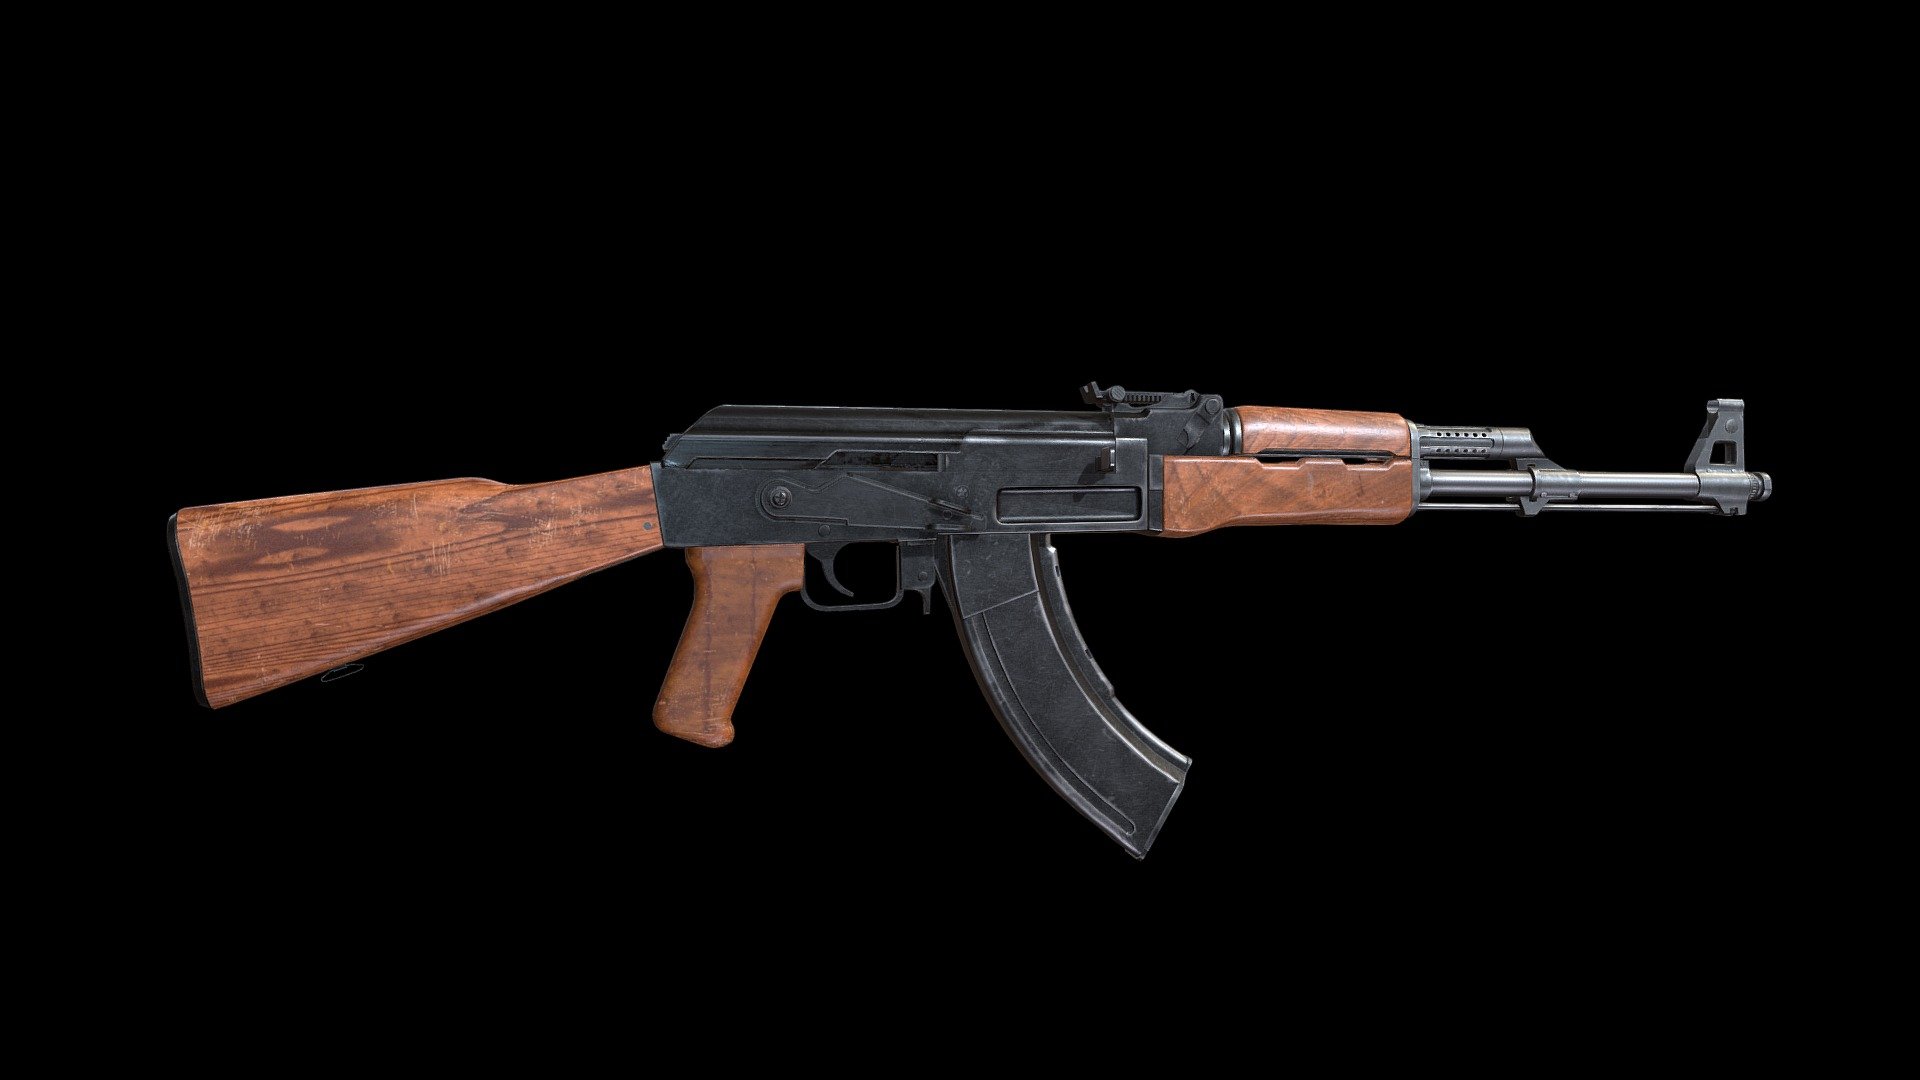 AK 47 type-2 - 3D model by tornikegavashelishvili5 [3075645] - Sketchfab